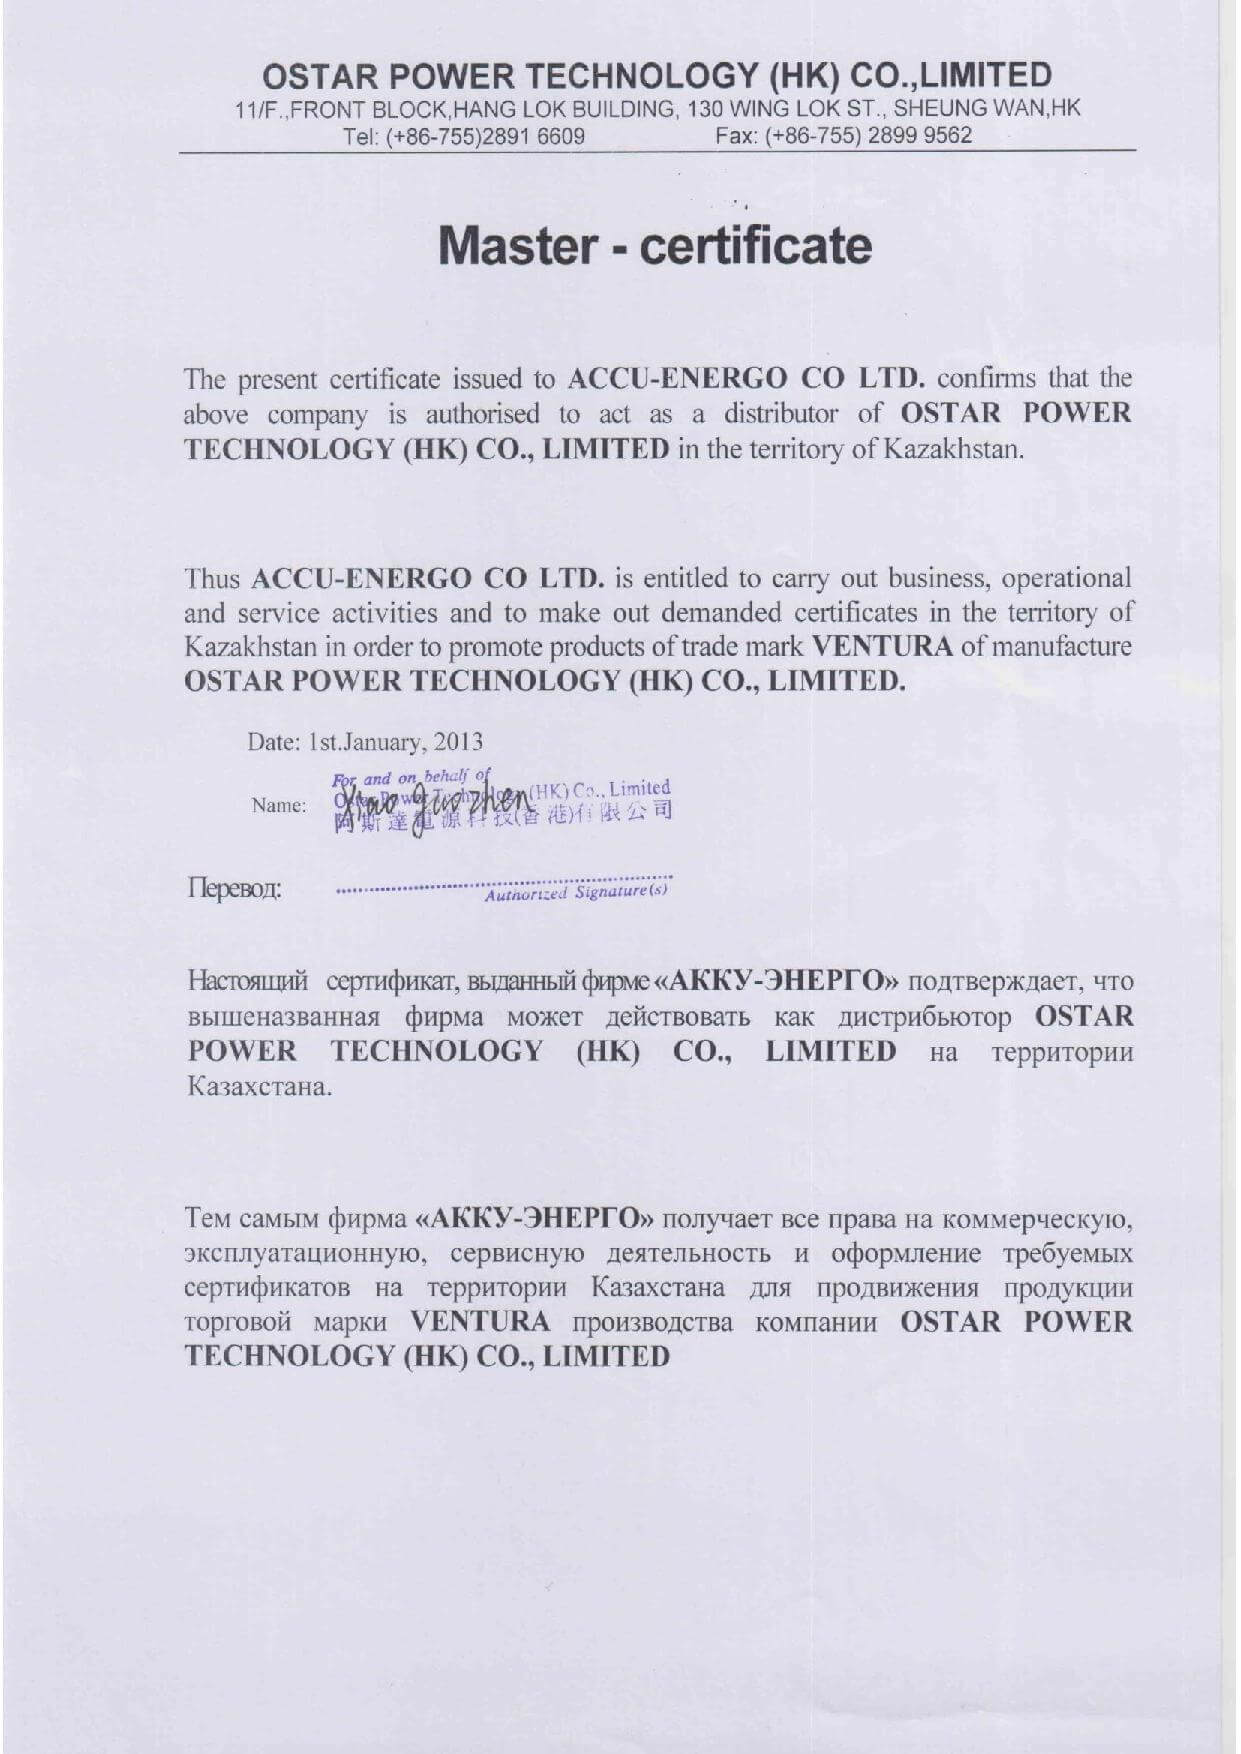 Сертификат от производителя OSTAR POWER TECHNOLOGY (VENTURA)